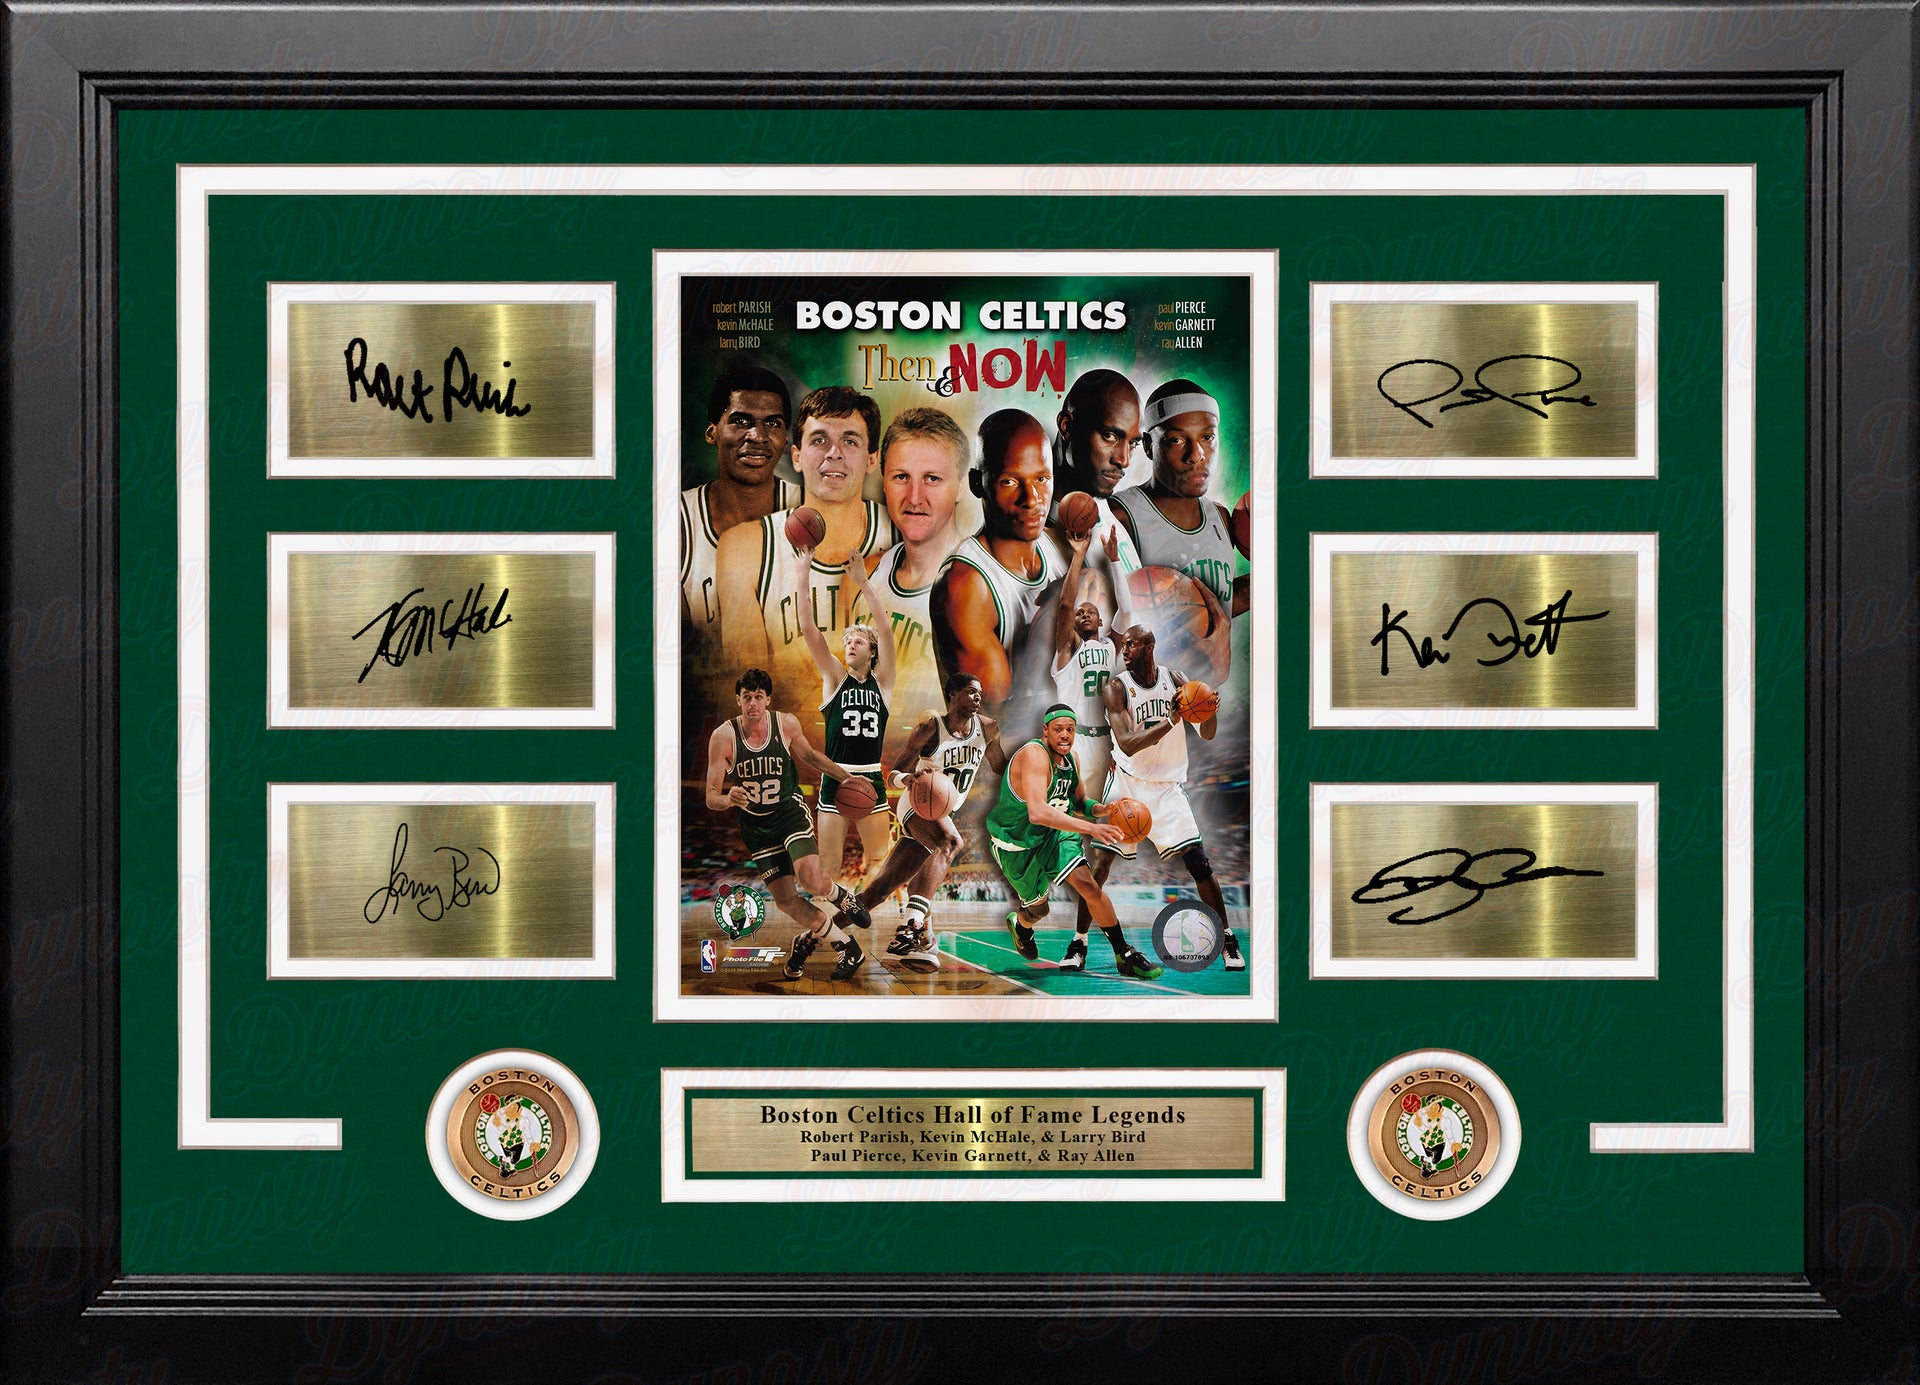 Boston Celtics: The Legend of Kevin Garnett